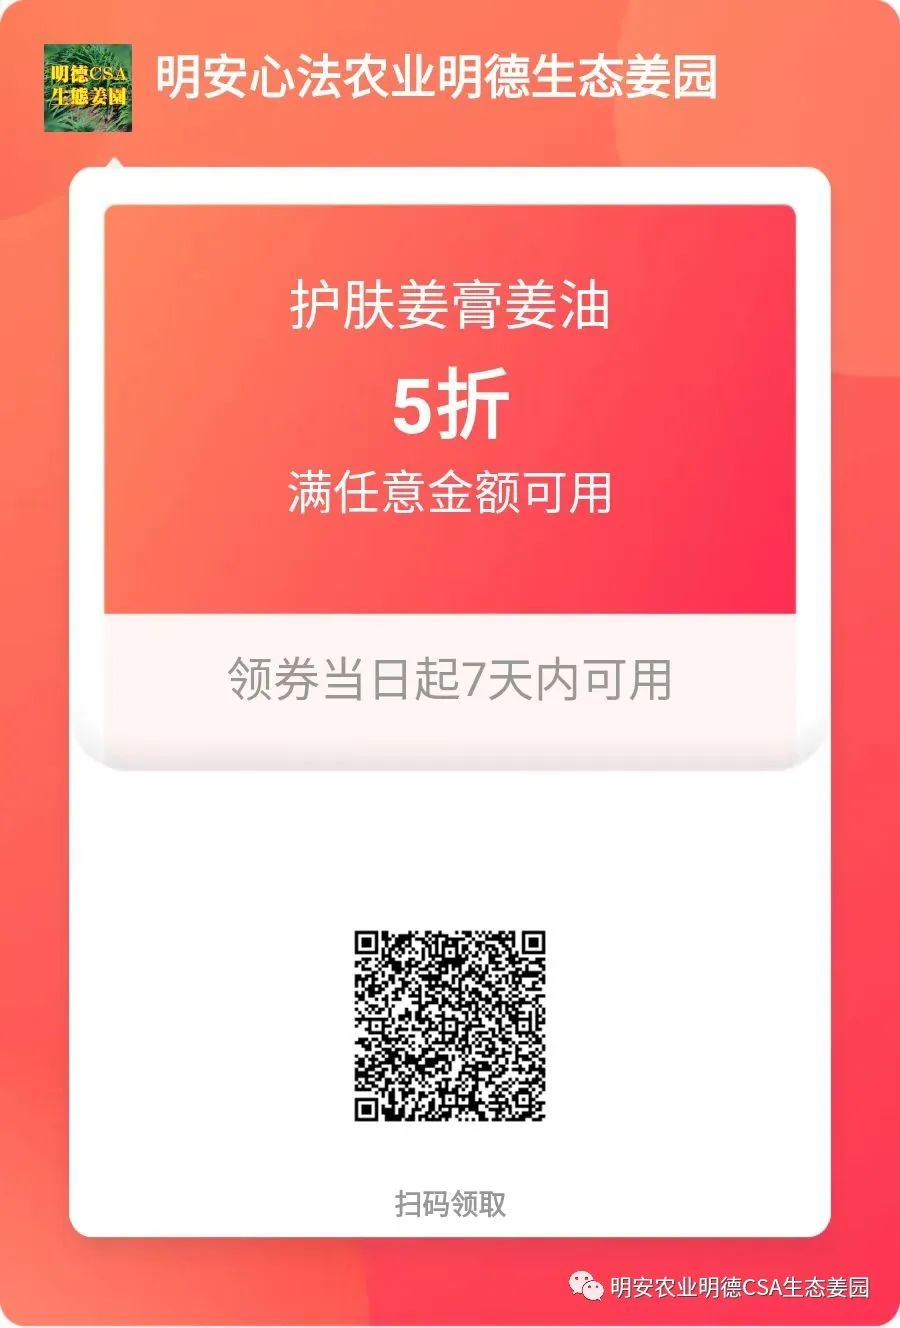 七不姜小黄姜 礼品卡 优惠劵 会员申请 折扣 积分2022年9月